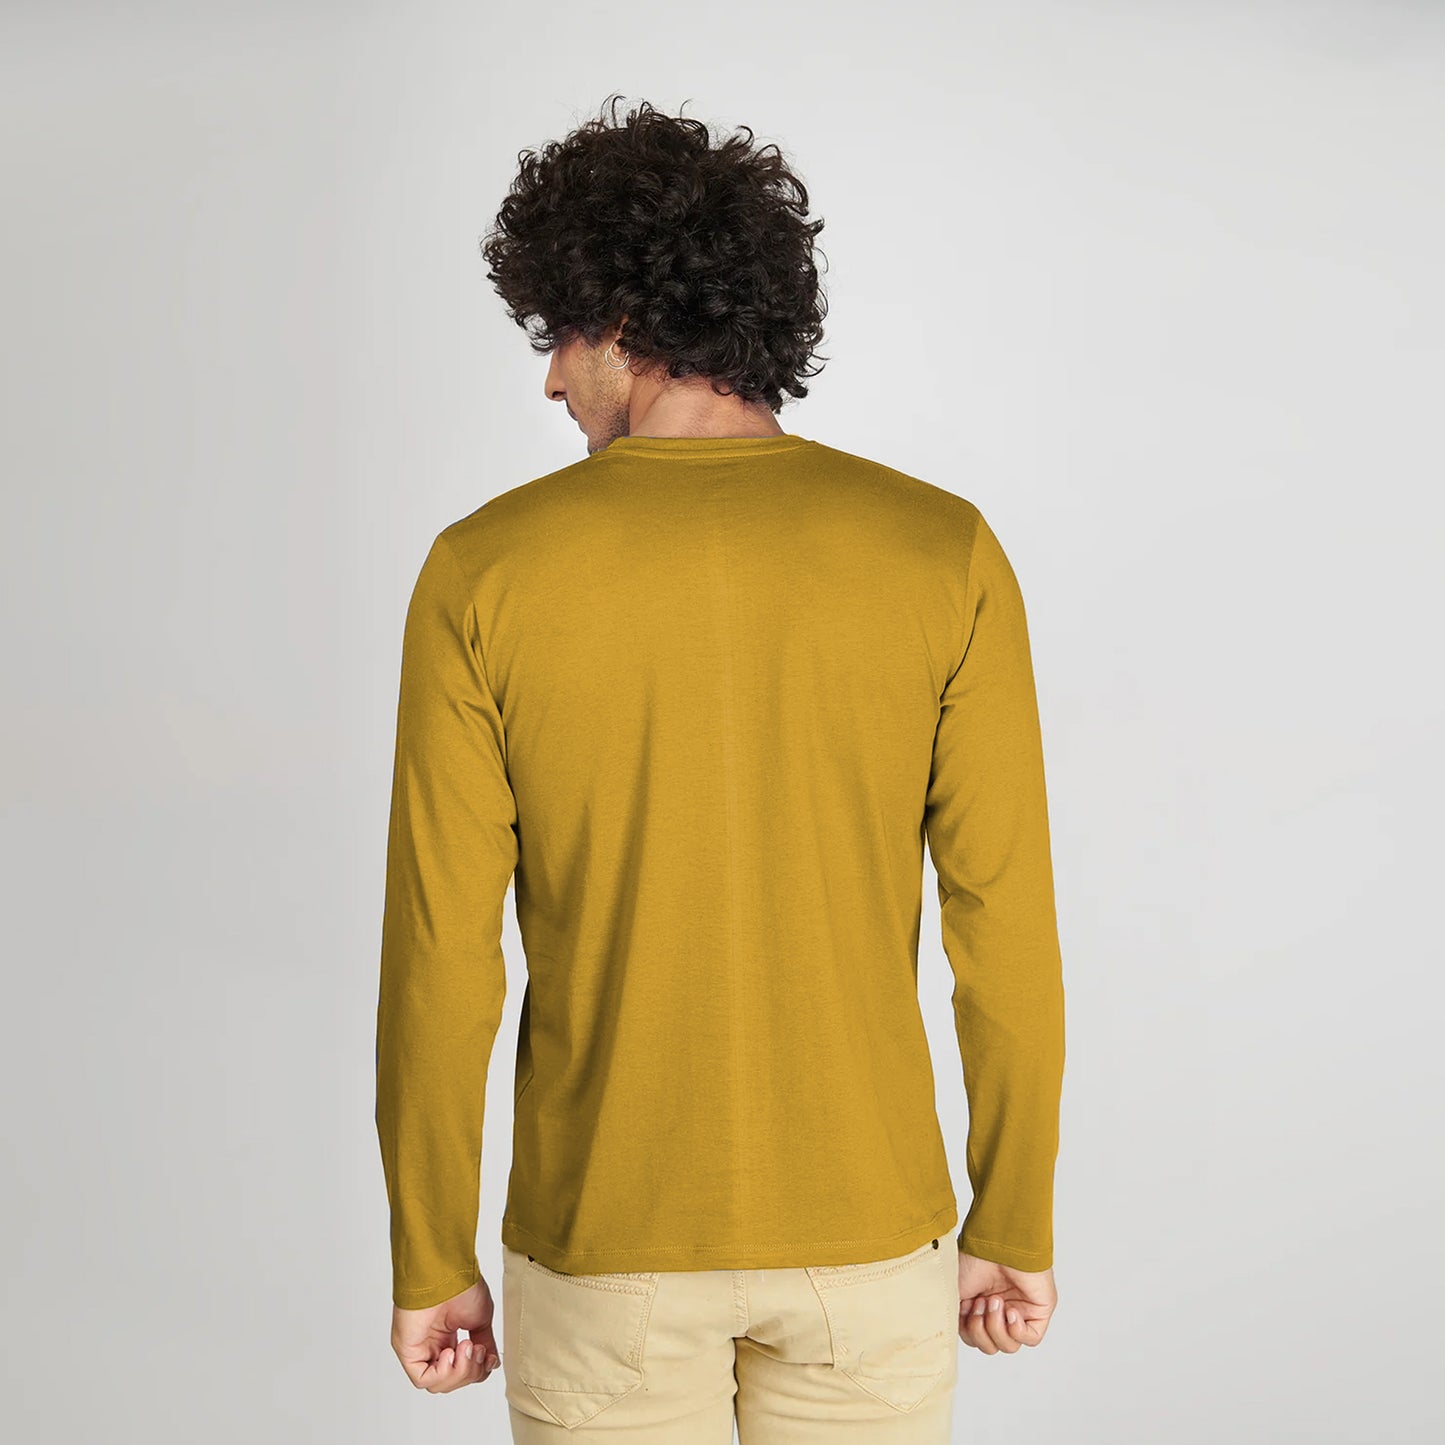 Basic Mustard Full Sleeves T-Shirt